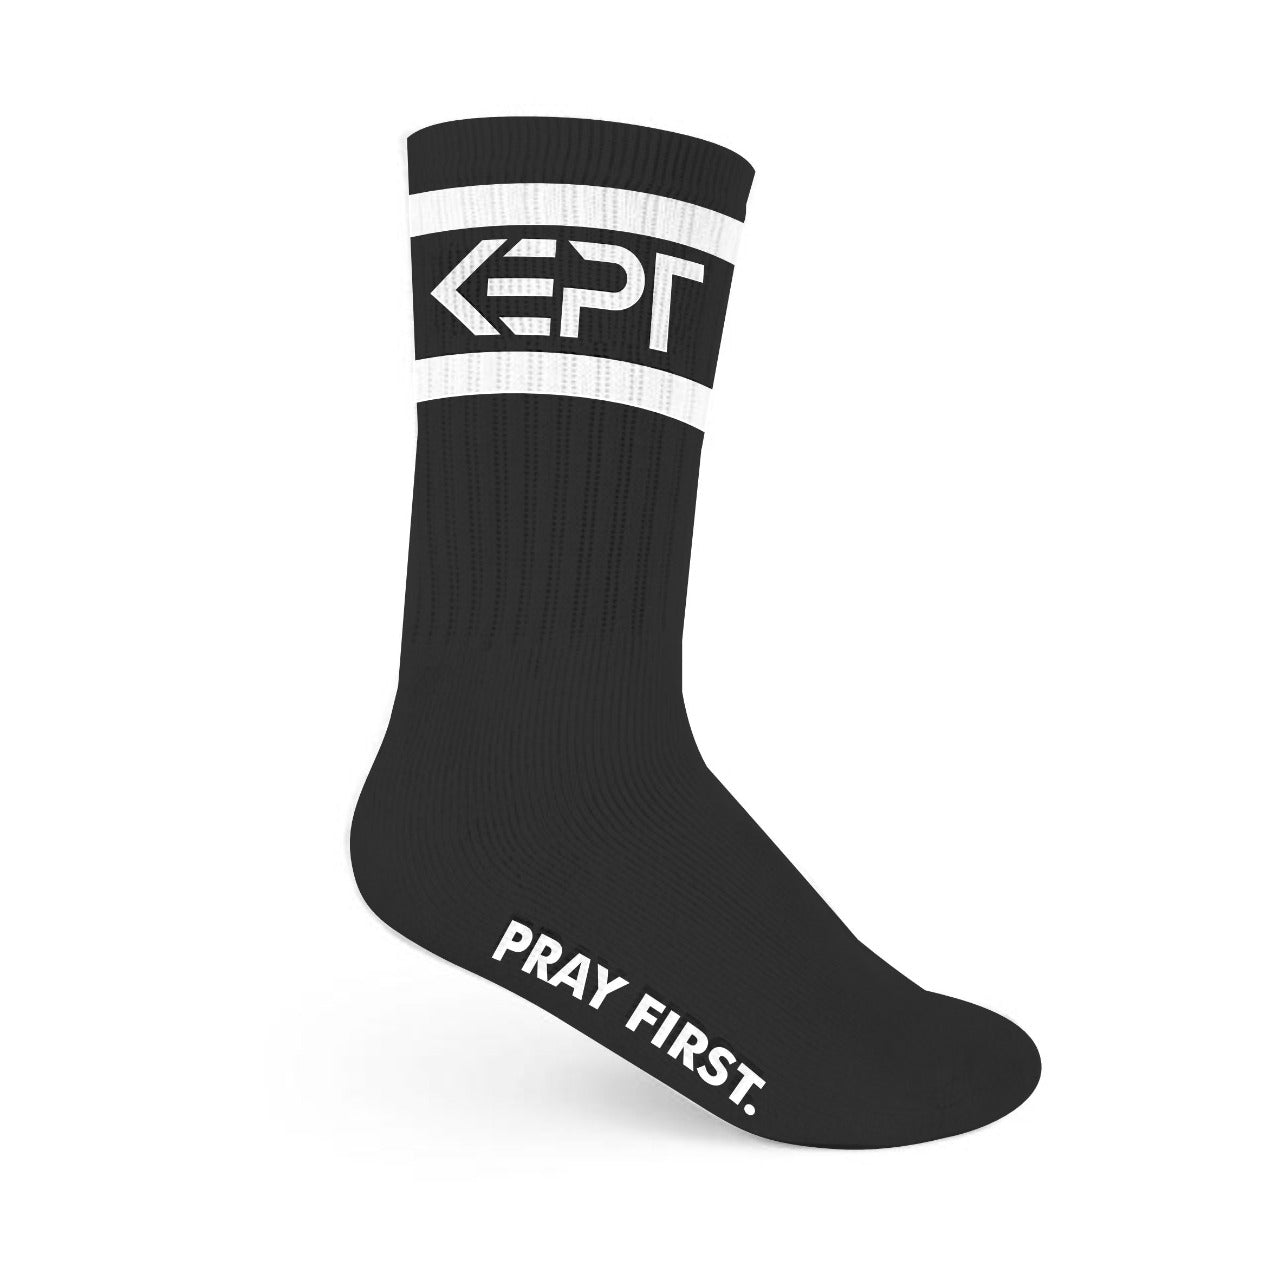 Black socks made by KEPT.